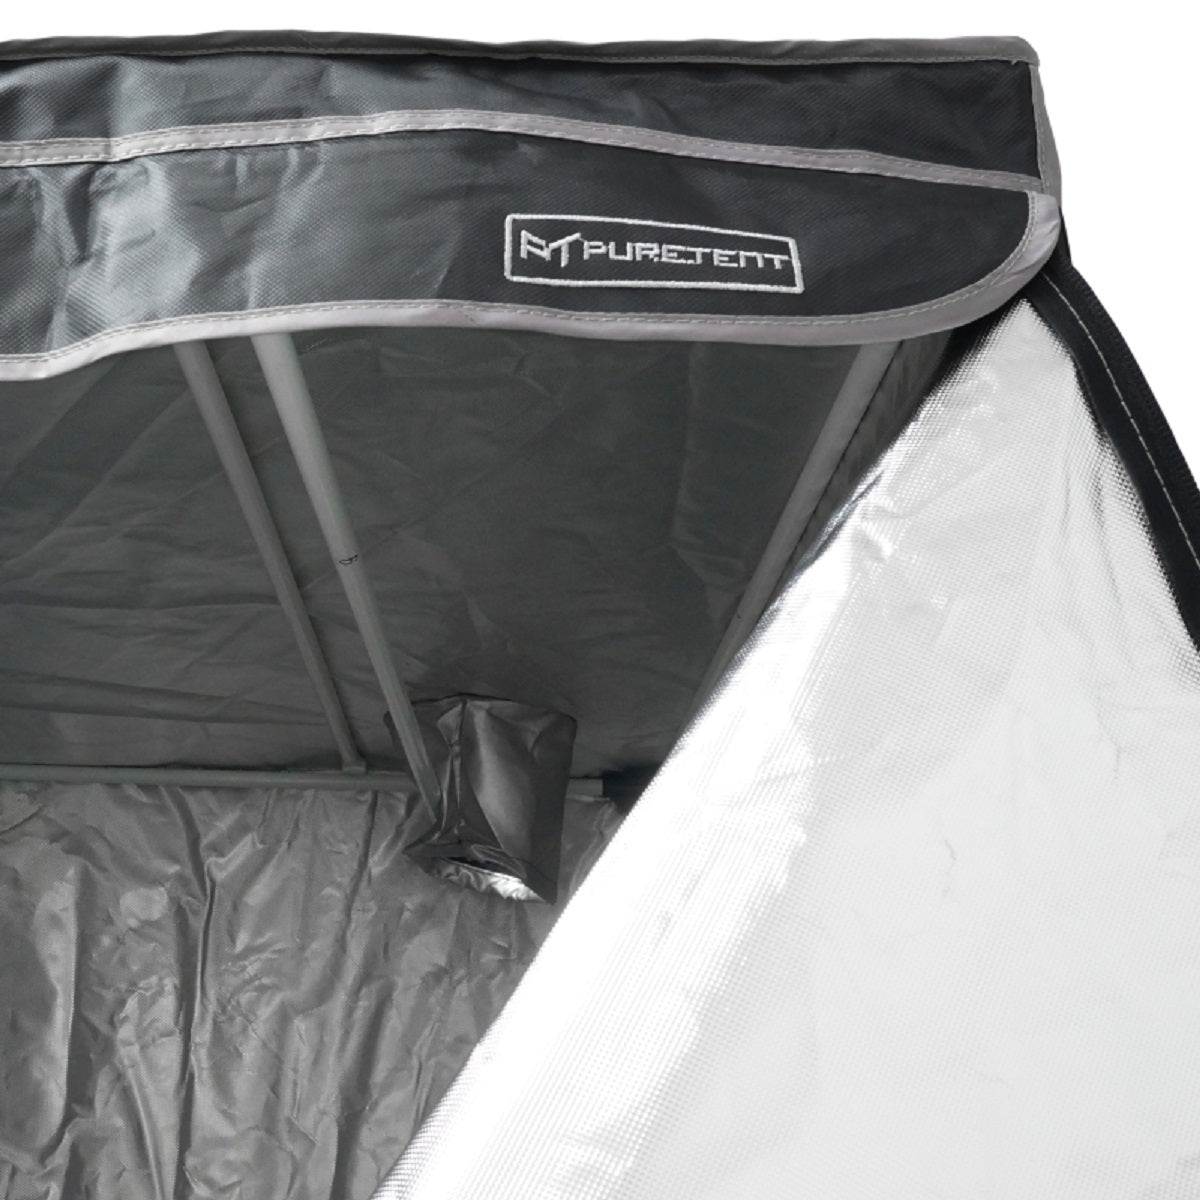 Box de culture indoor Pure Tent Vers 2.0 120x120x200cm